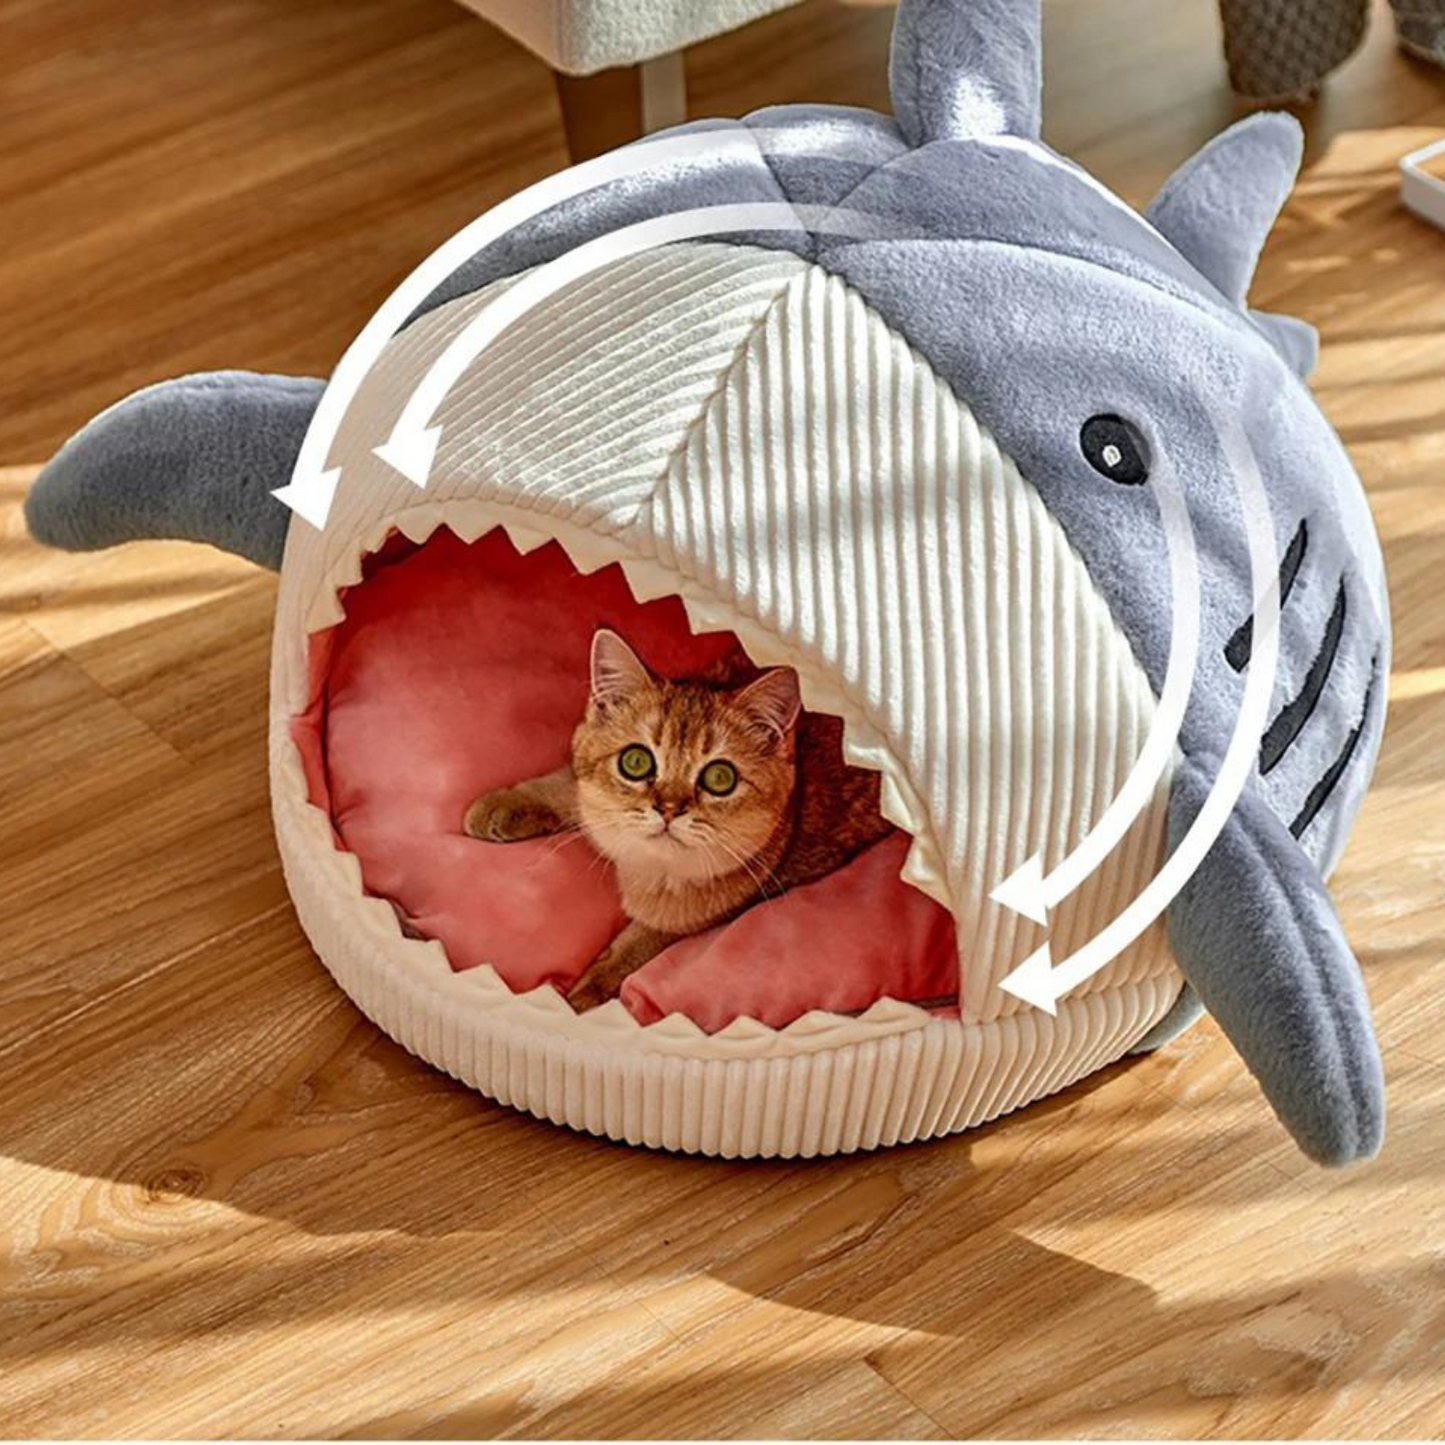 Niedliche Katzenhöhle im süßen Hai-Design - außergewöhnlich entspannen daheim